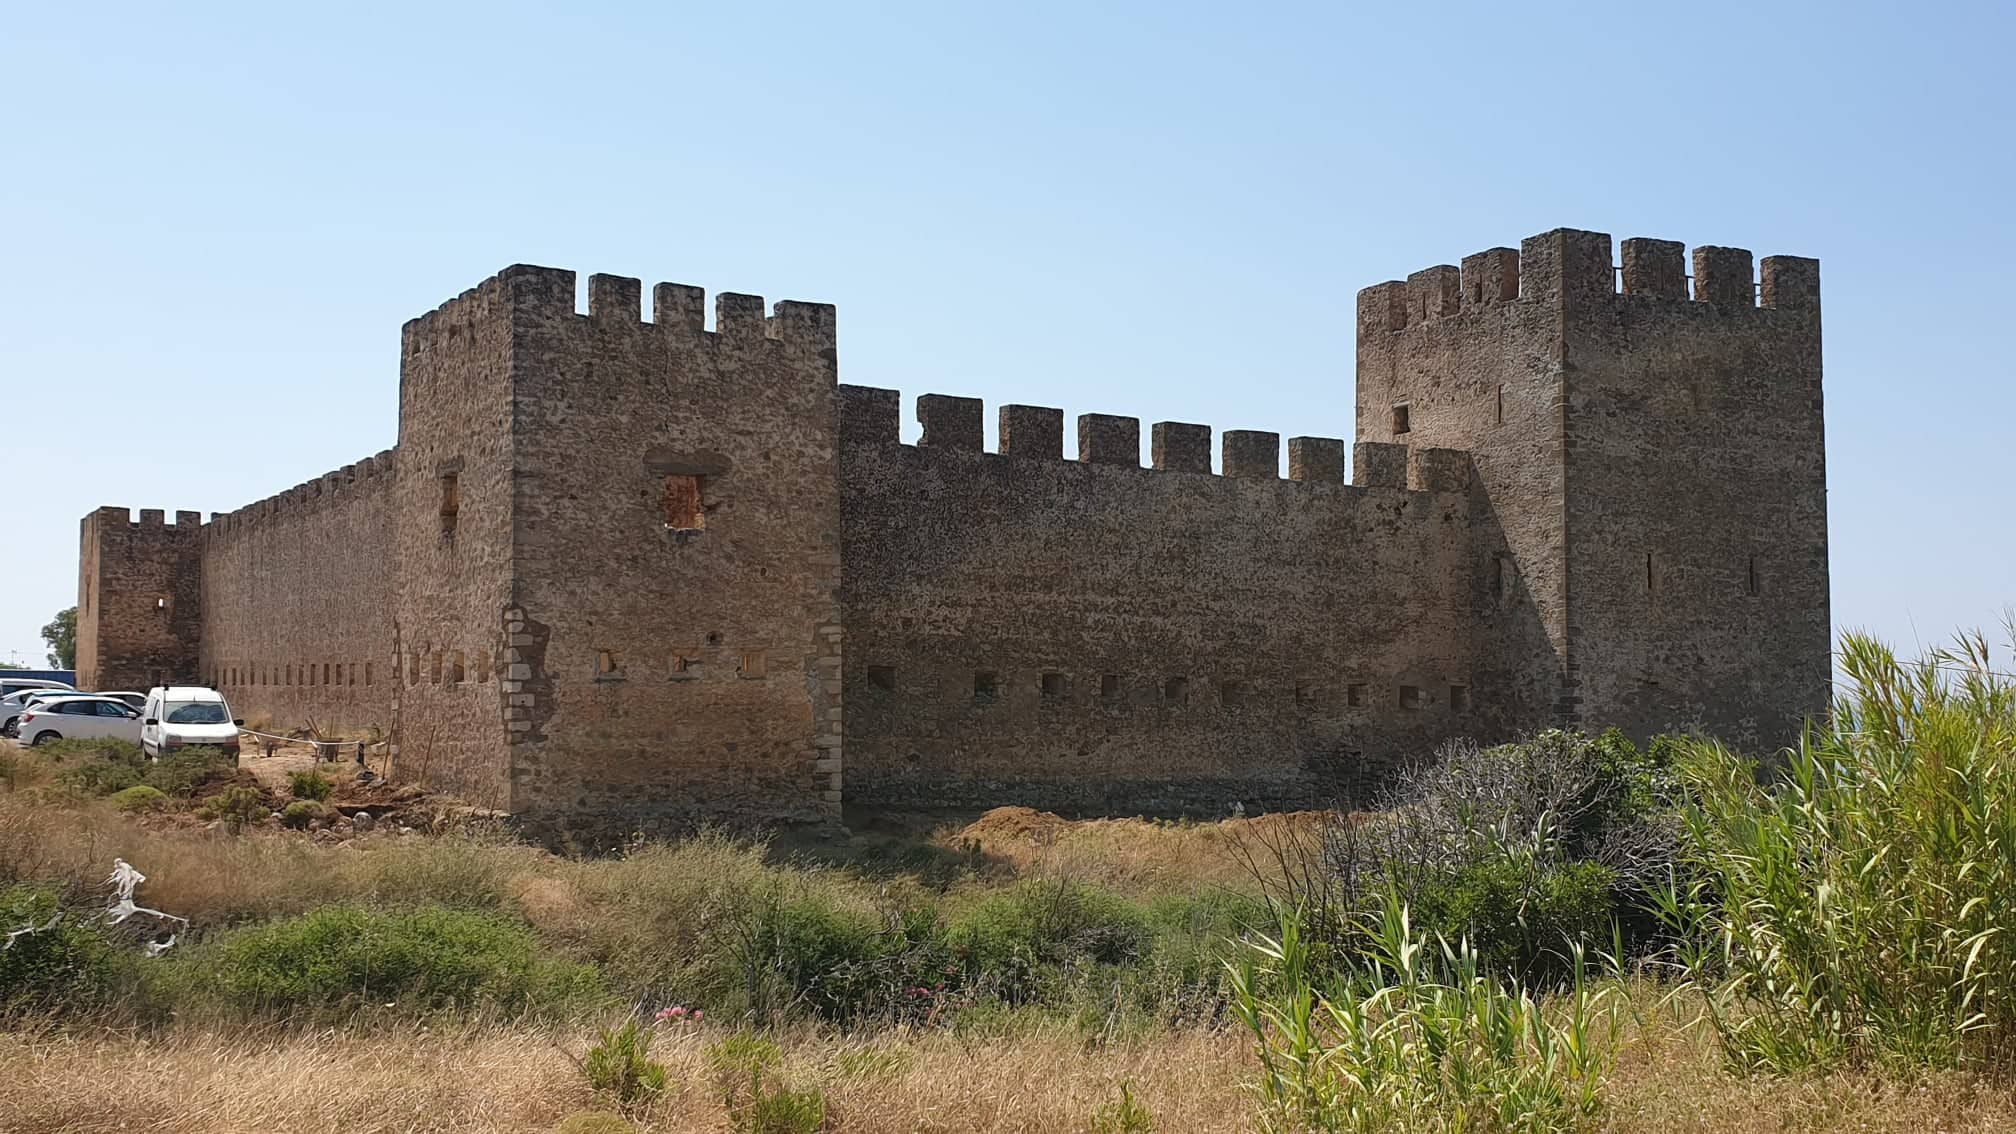 Έργα προστασίας και ανάδειξης της πολιτιστικής κληρονομιάς στην Περιφέρεια Κρήτης